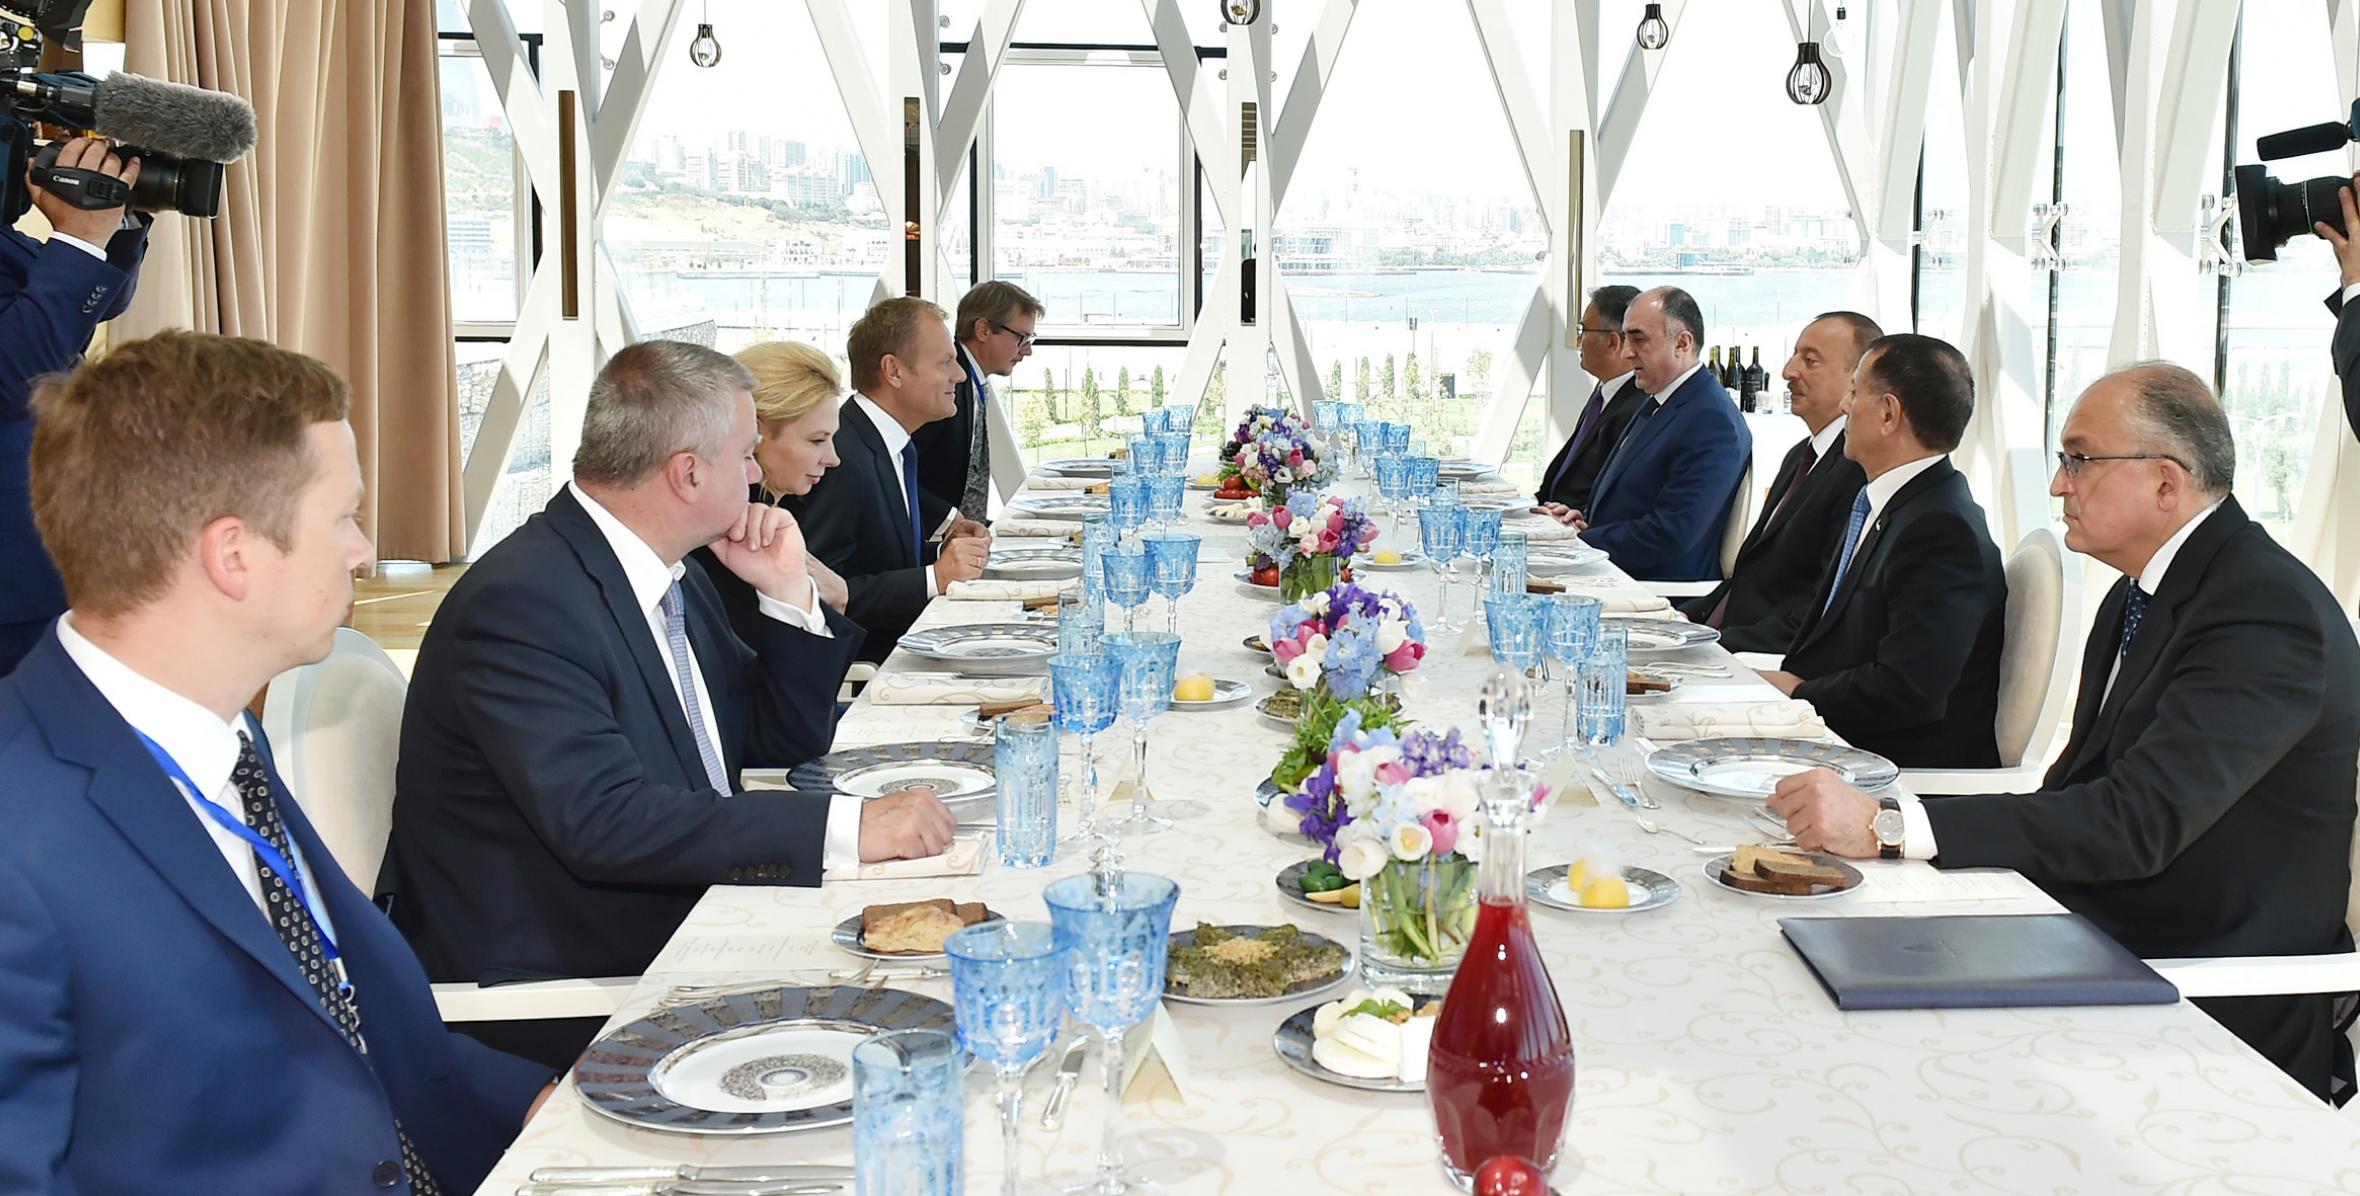 От имени Ильхама Алиева дан официальный обед в честь президента Совета Европейского Союза